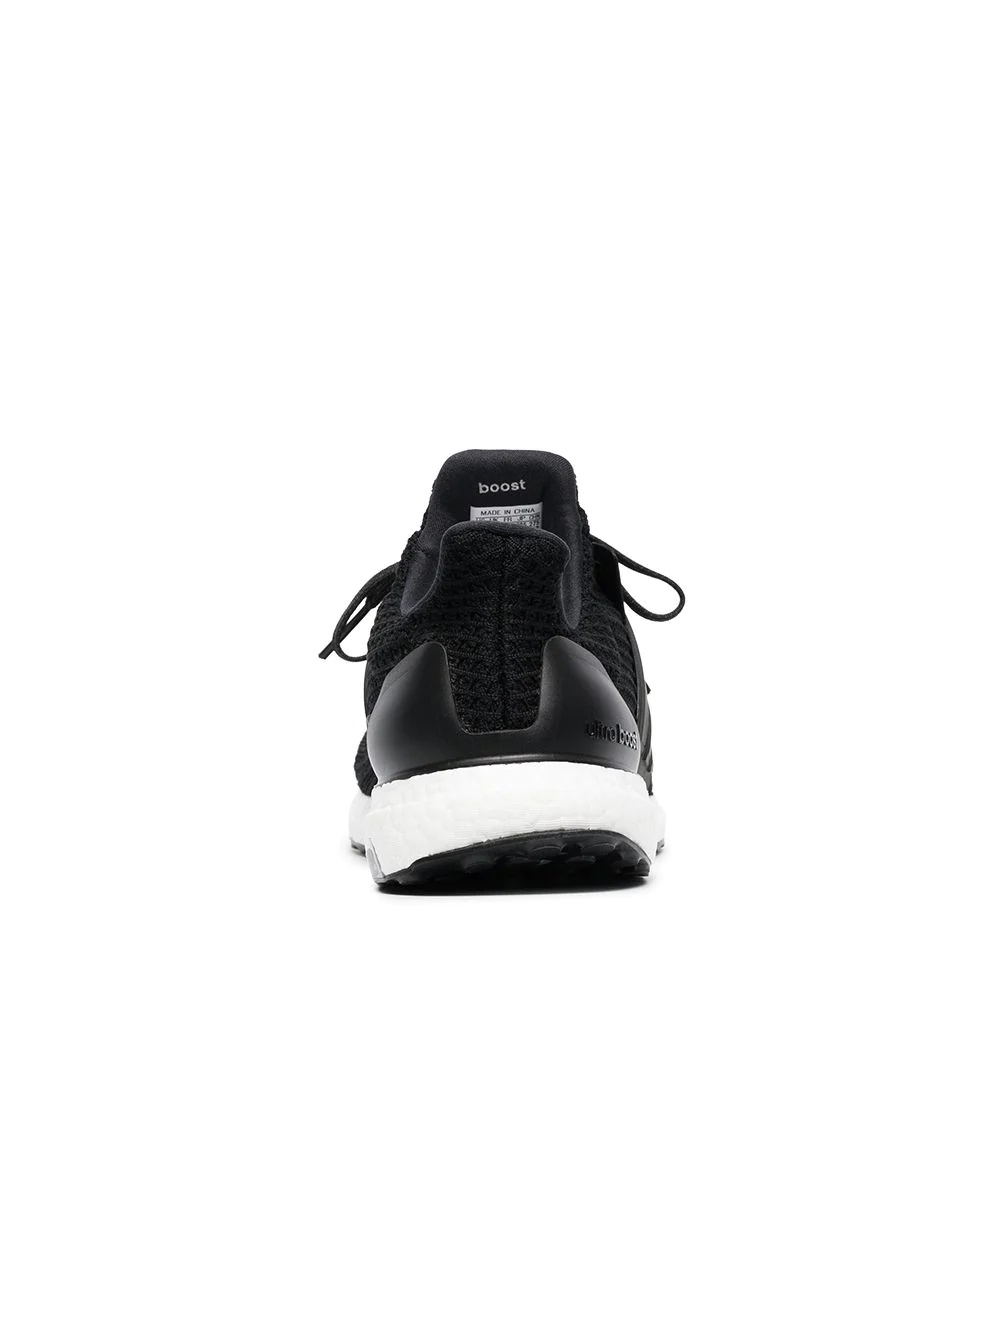 Ultraboost "4.0 Core Black" sneakers - 5